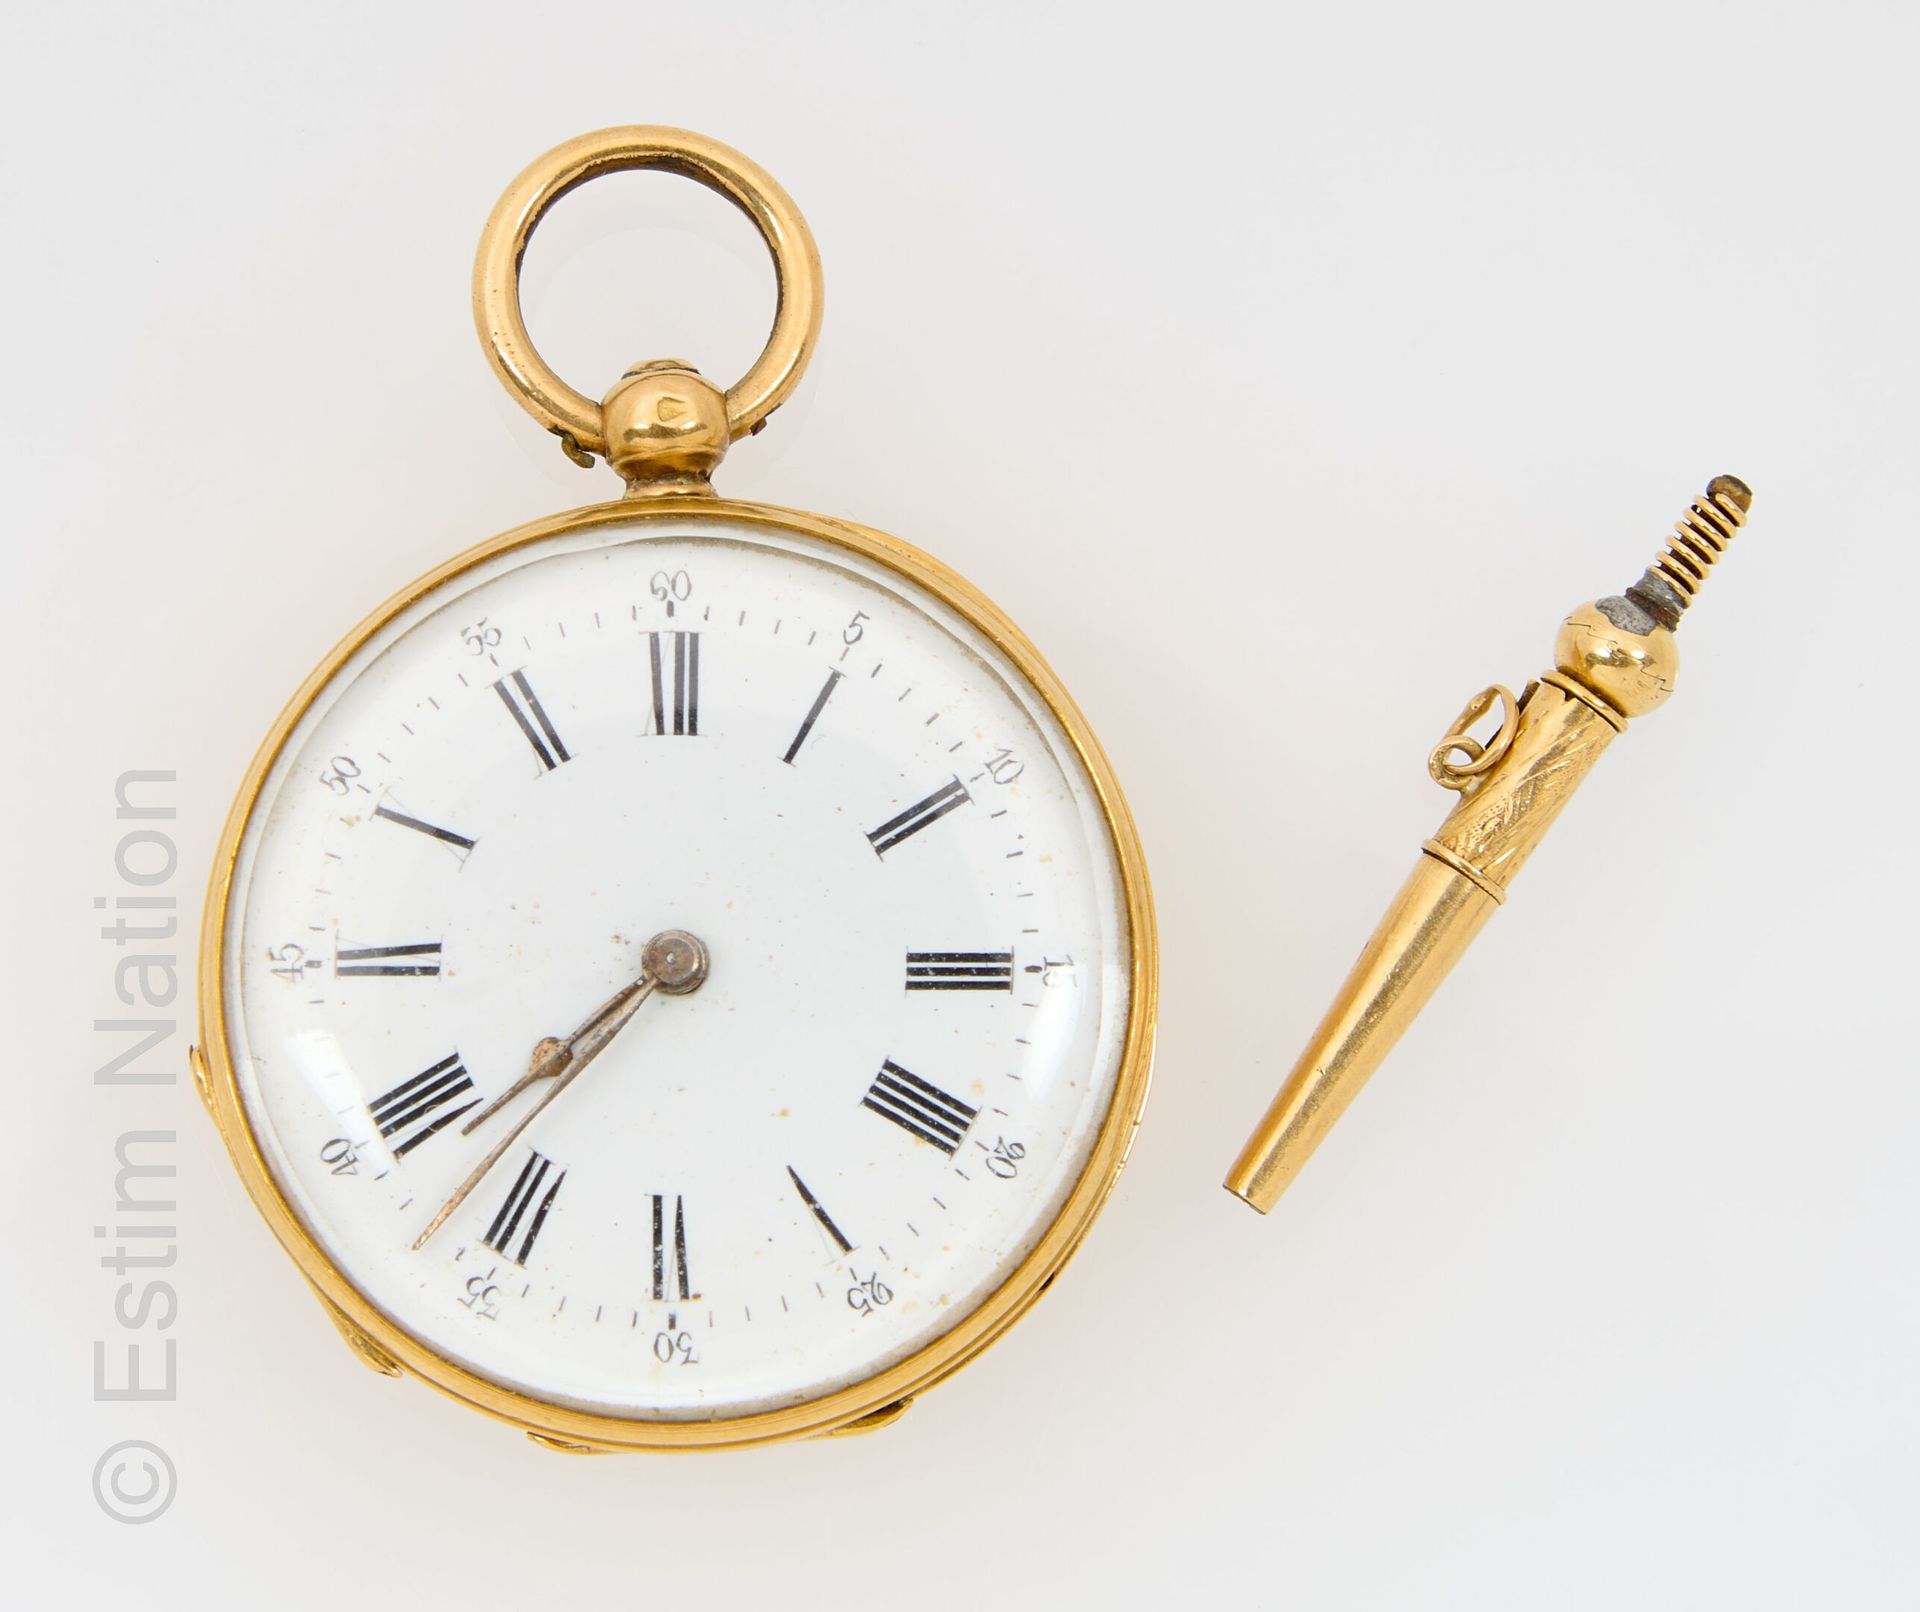 MONTRE DE COL OR Reloj de cuello en oro amarillo de 18 quilates 750 milésimas co&hellip;